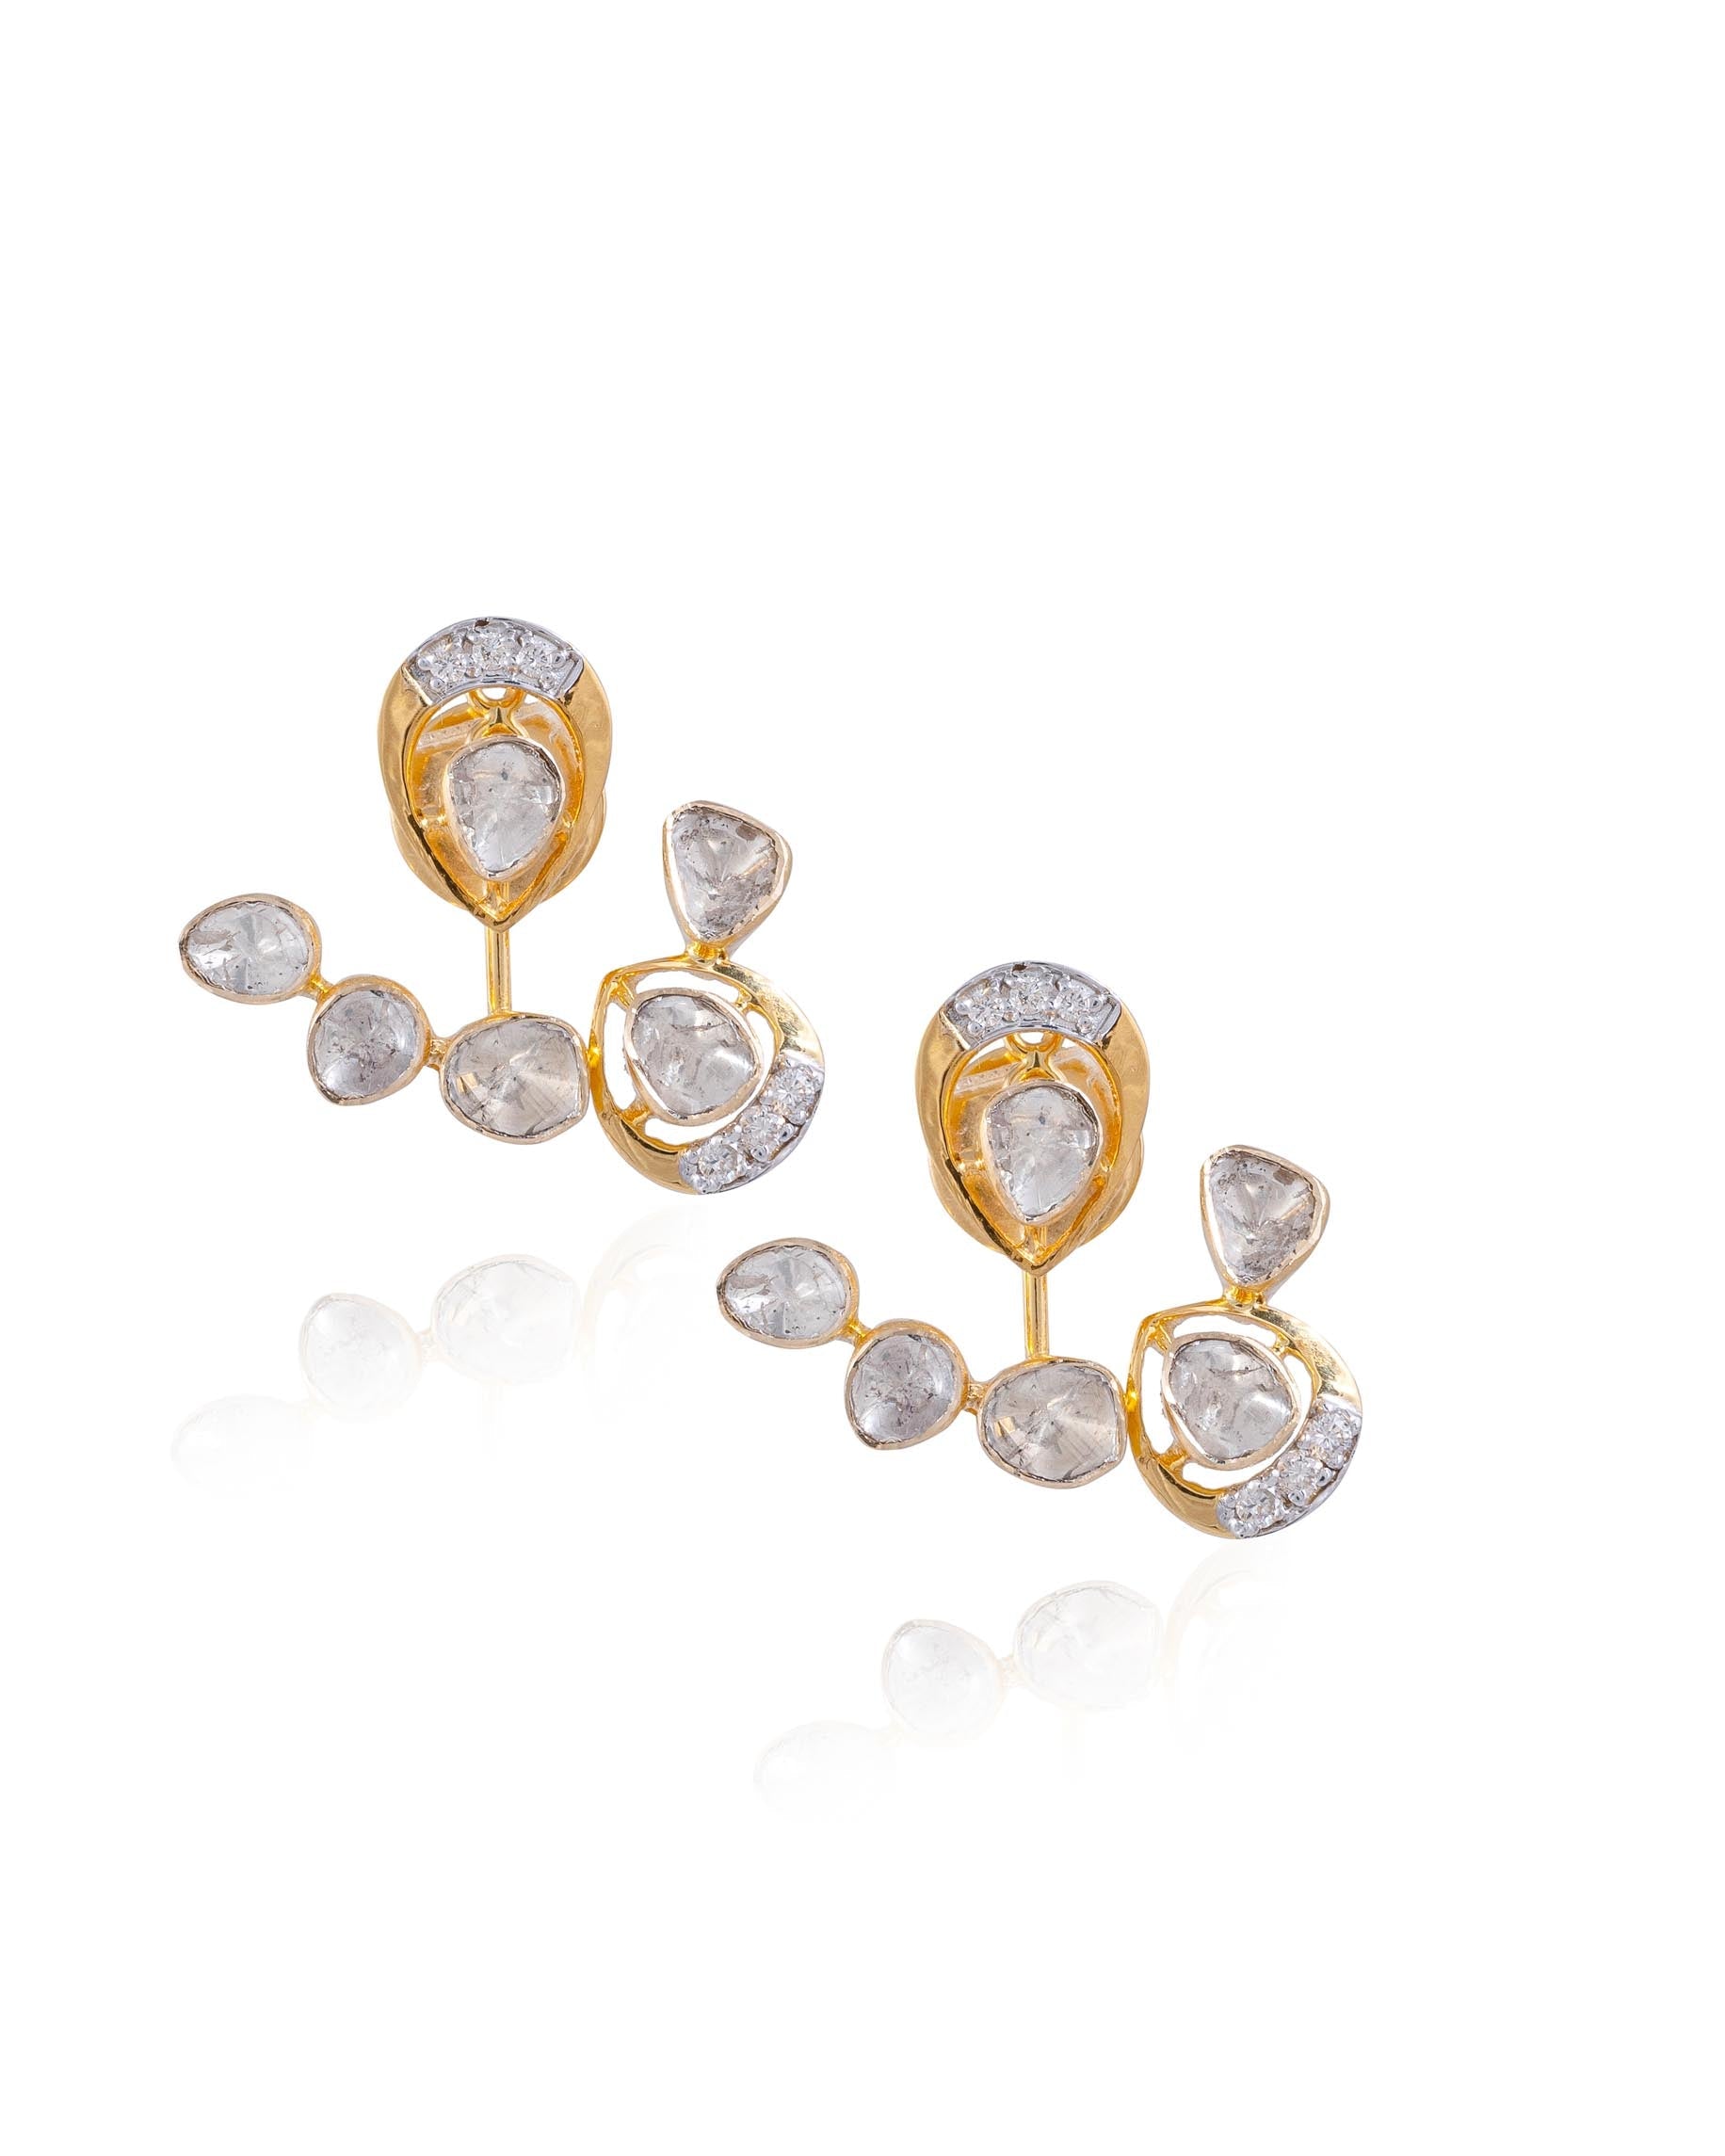 Falhia Polki And Diamond Earrings